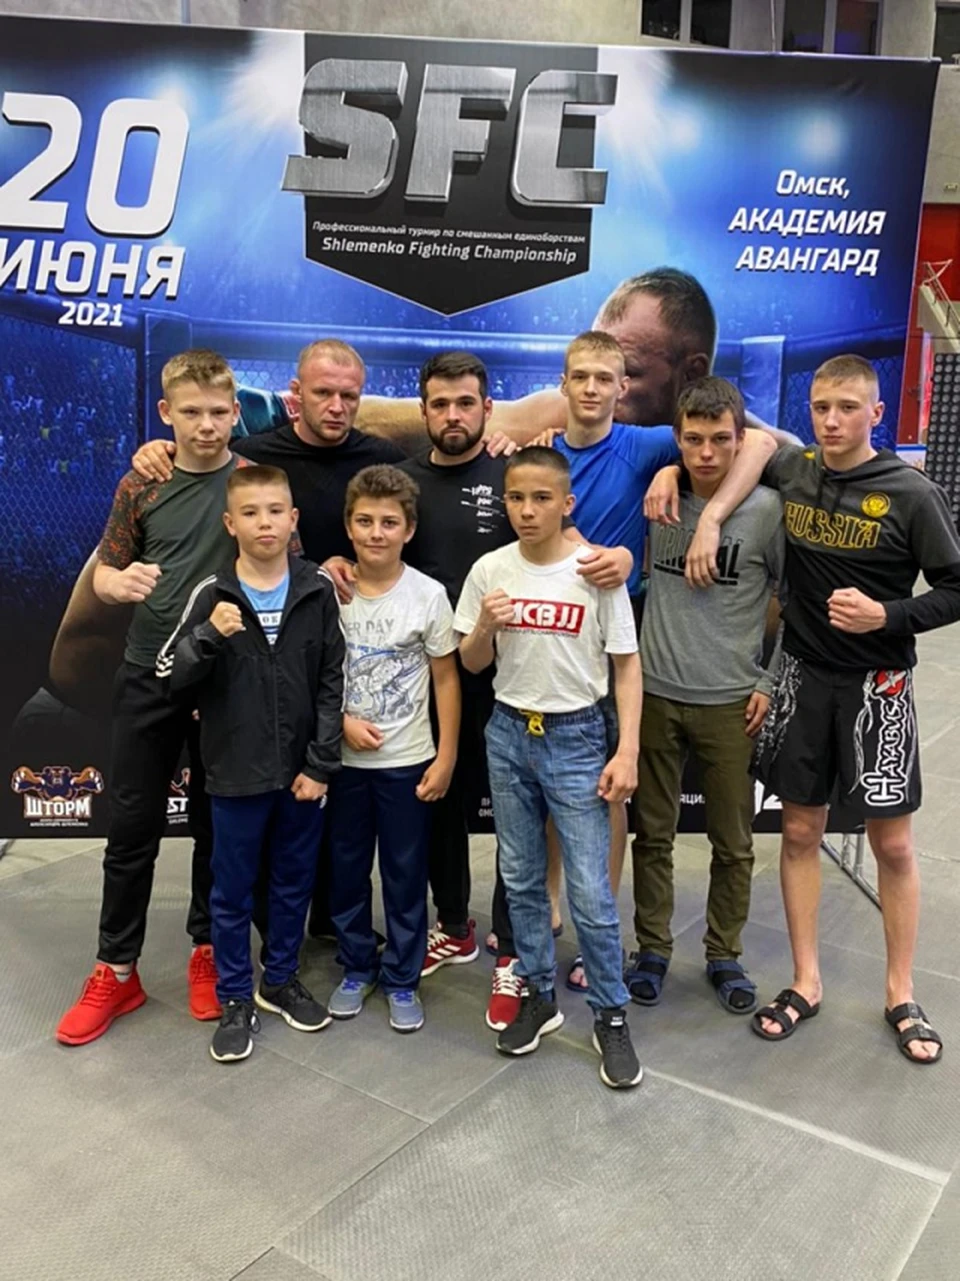 Молодые томские спортсмены конкурировали в Омске с сильными соперниками, но сумели показать достойные результаты. Фото пресс-службы администрации Томска.